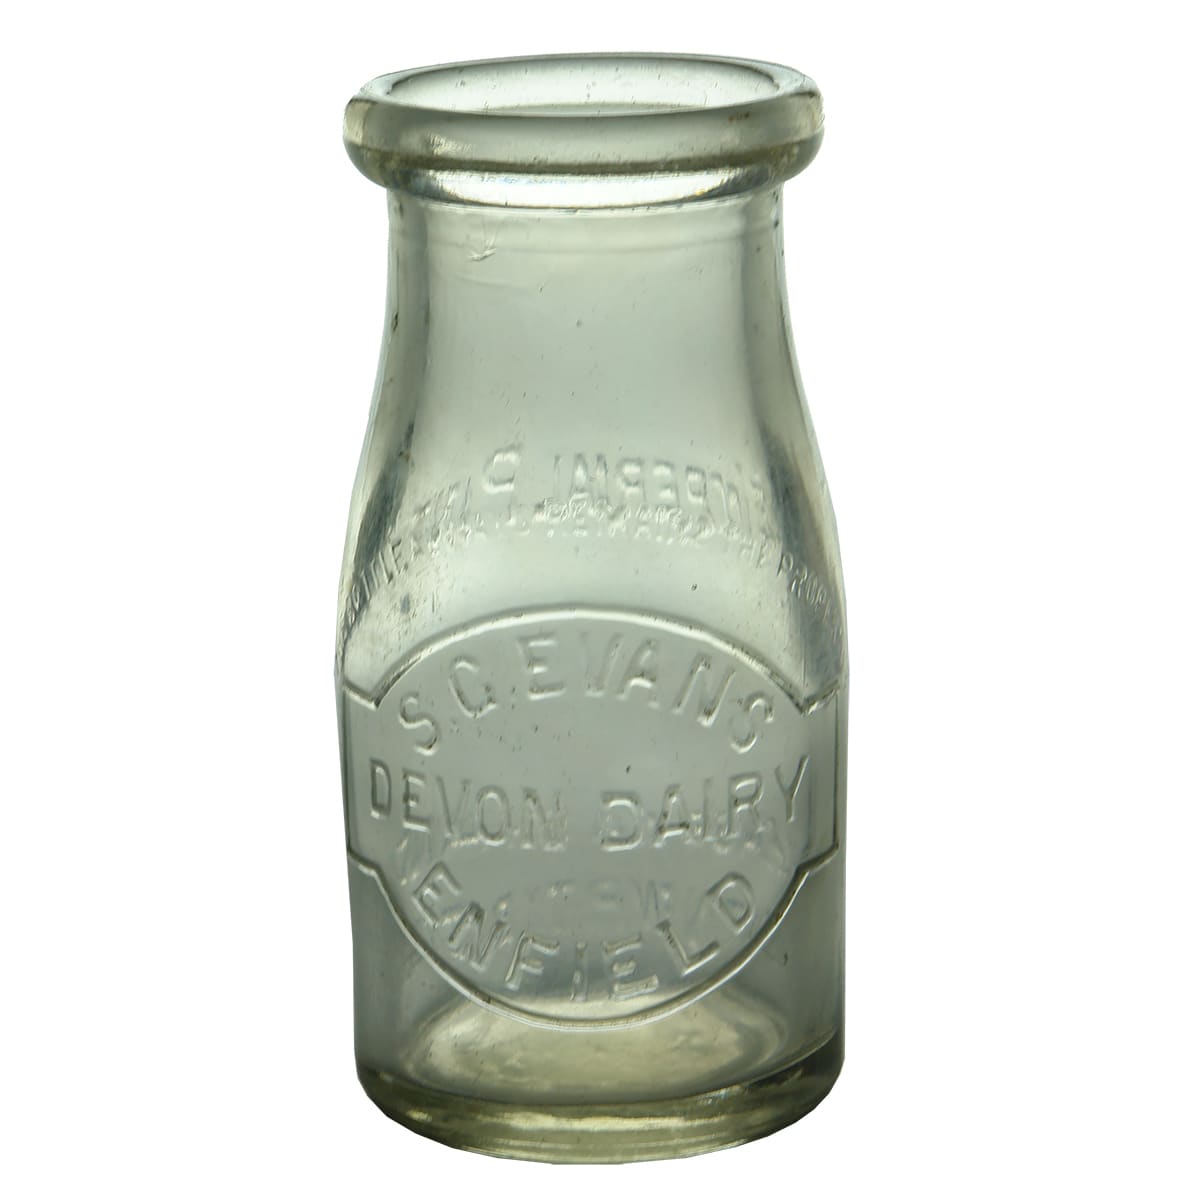 Milk. S. G. Evans, Devon Dairy, Enfield. Wad lip. 1/4 Pint.